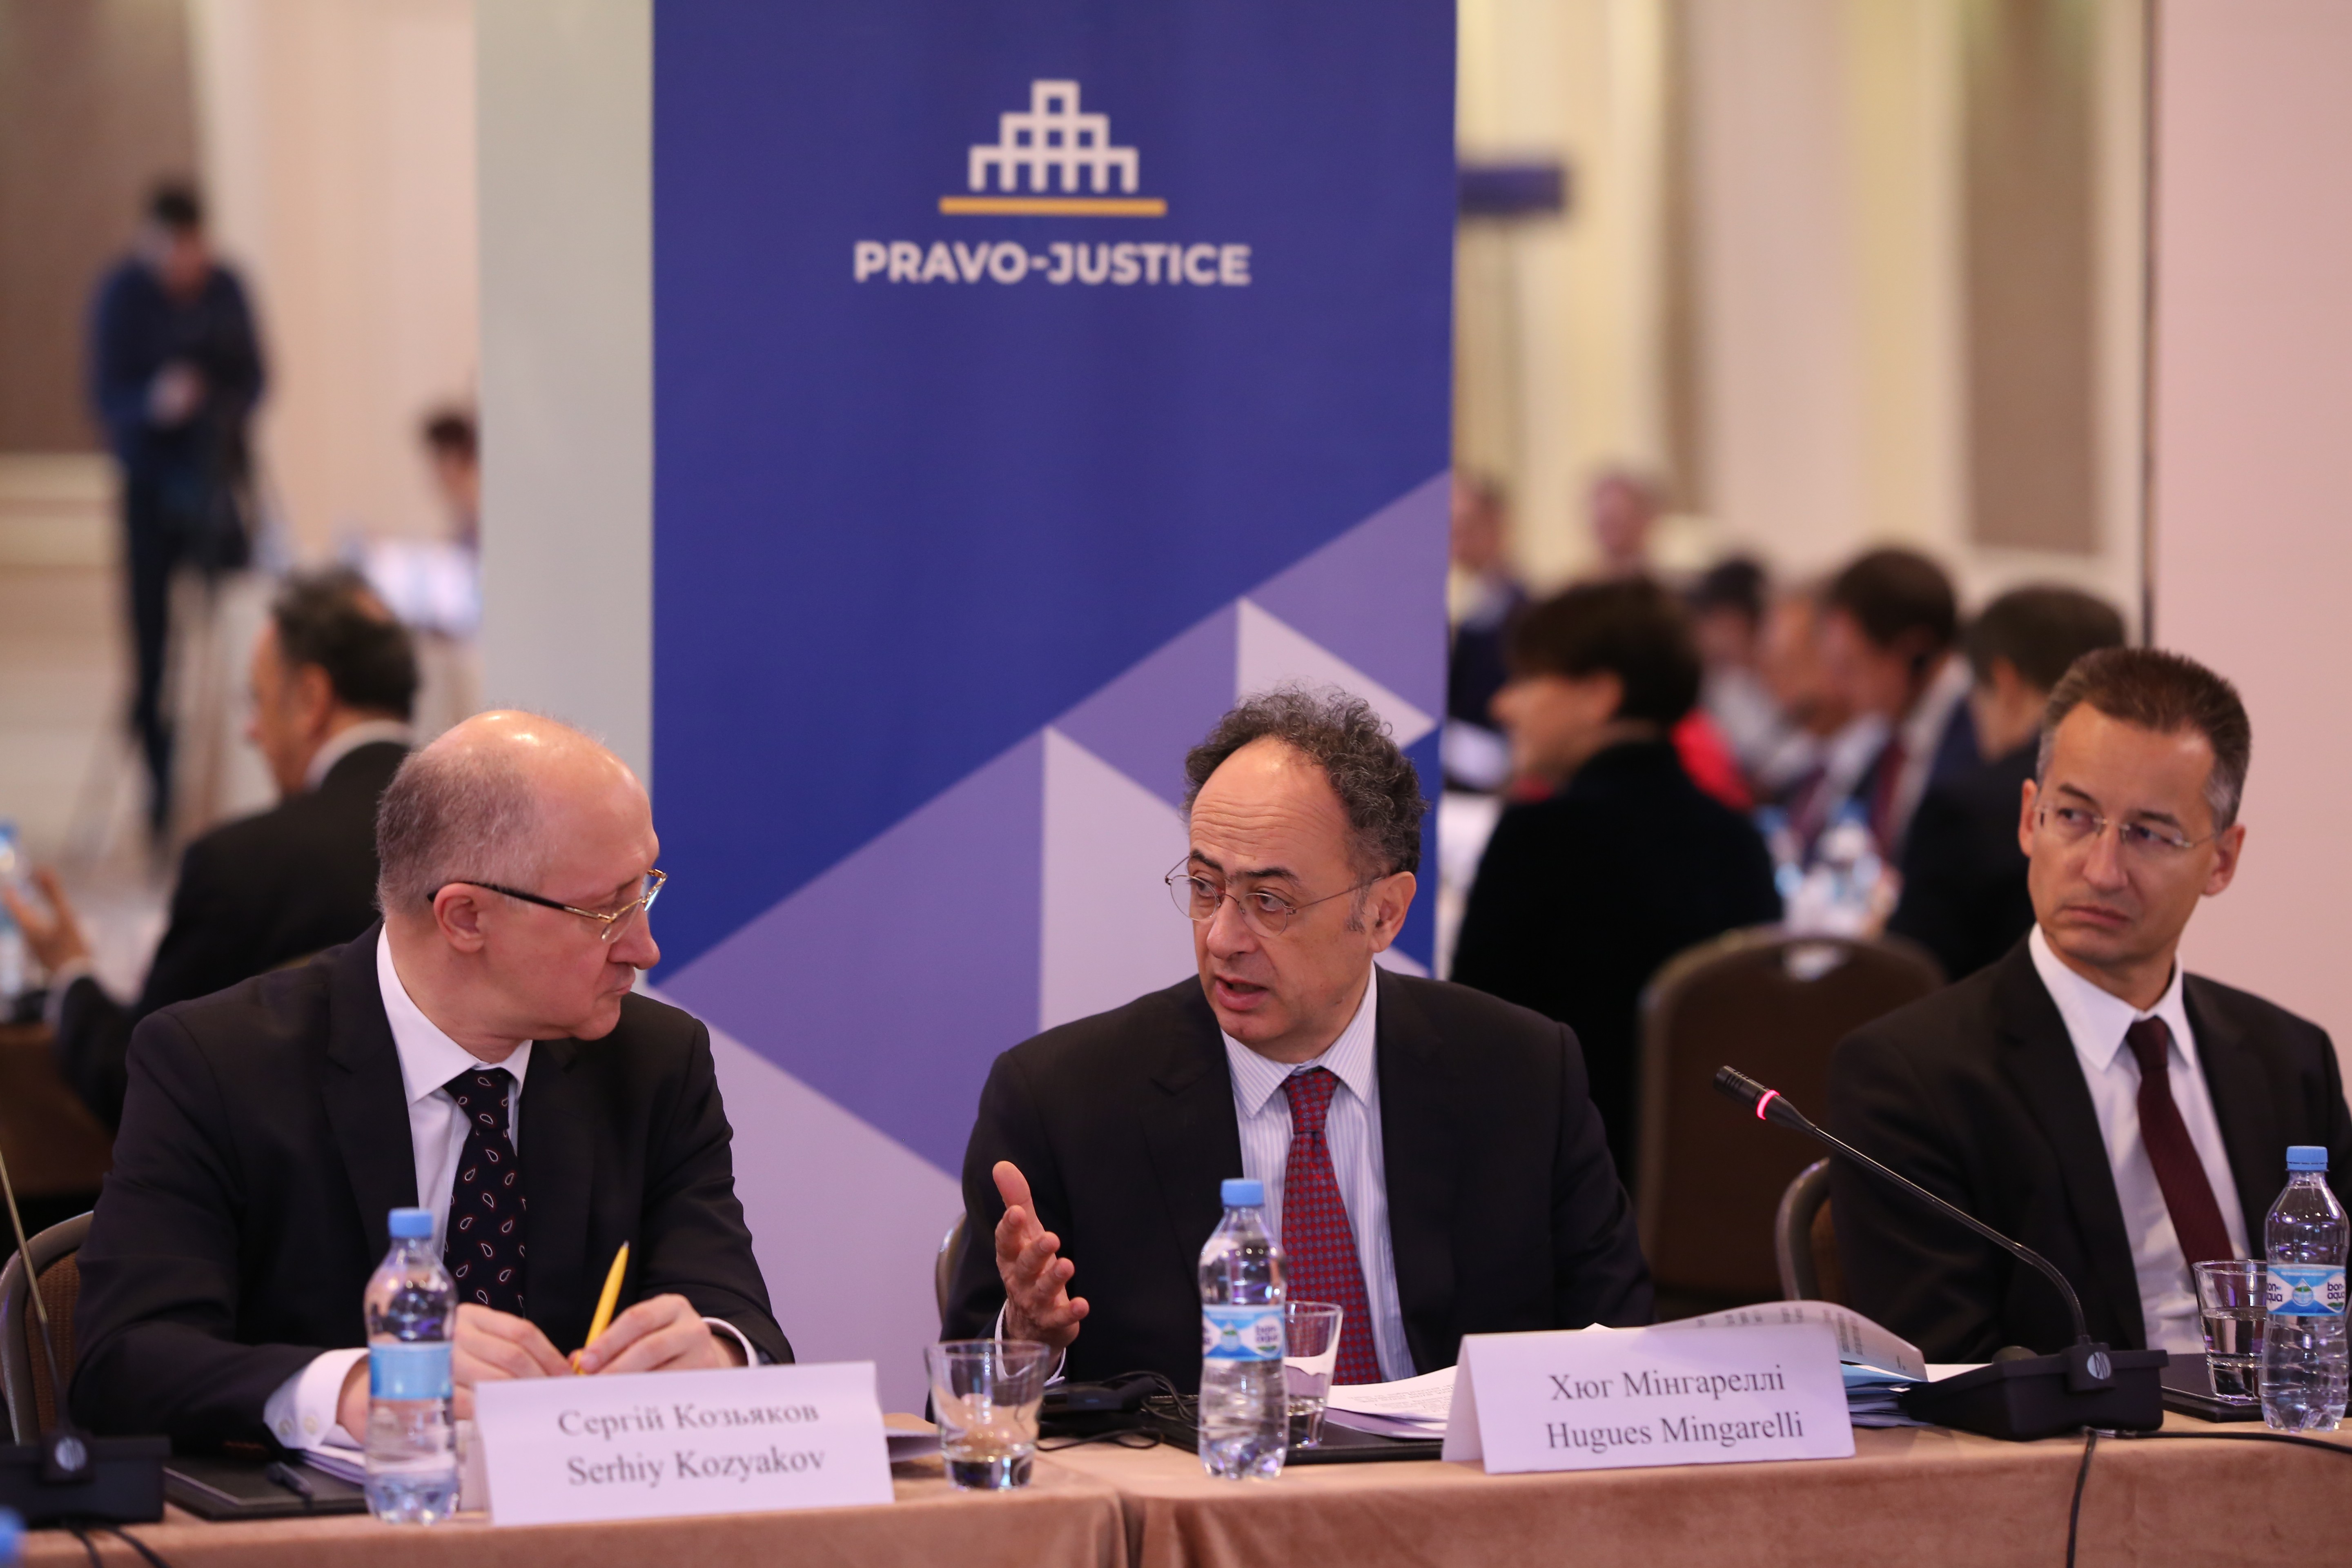 Експерти Проекту ЄС «Право-Justice» представили Звіт щодо відбору та оцінювання суддів